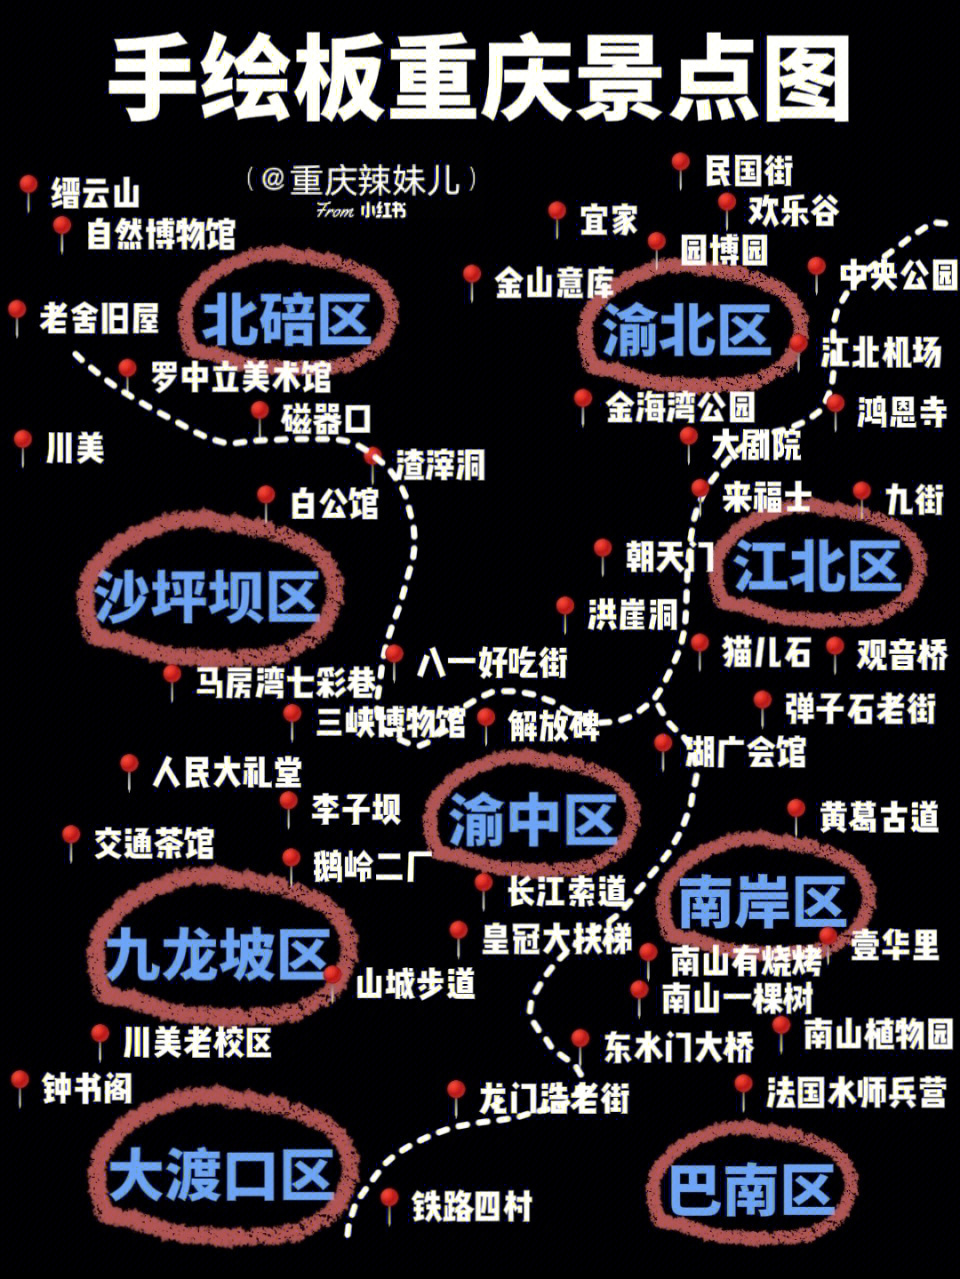 重庆市观音桥地图图片